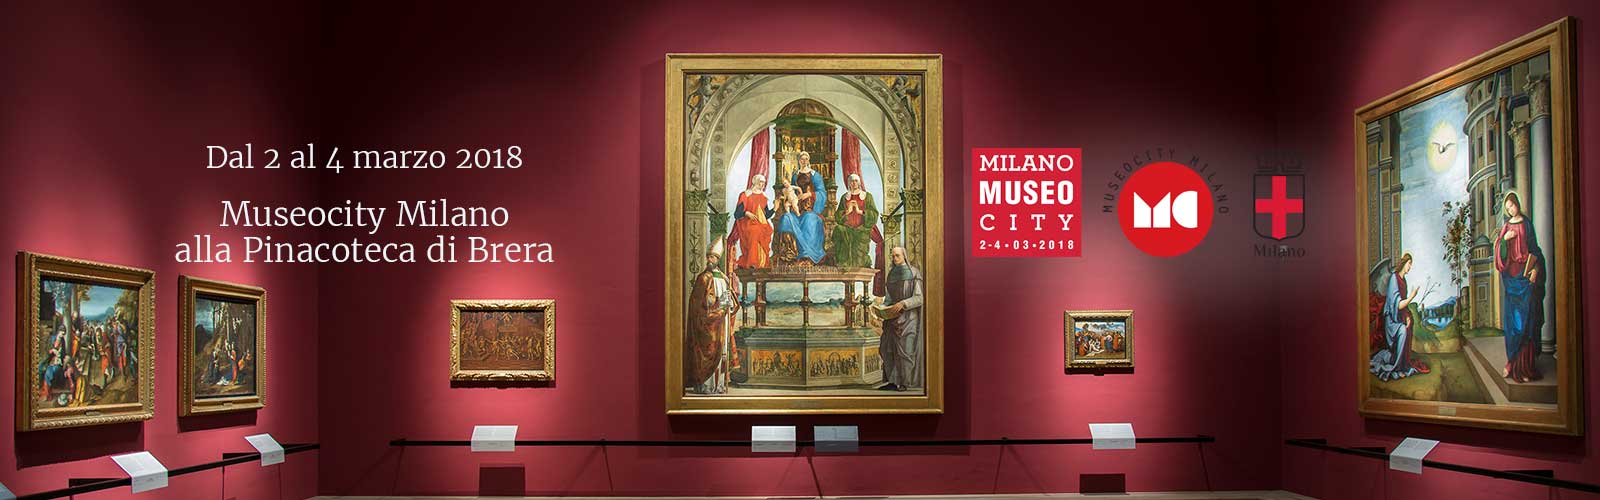 Speciale Museocity alla Pinacoteca di Brera